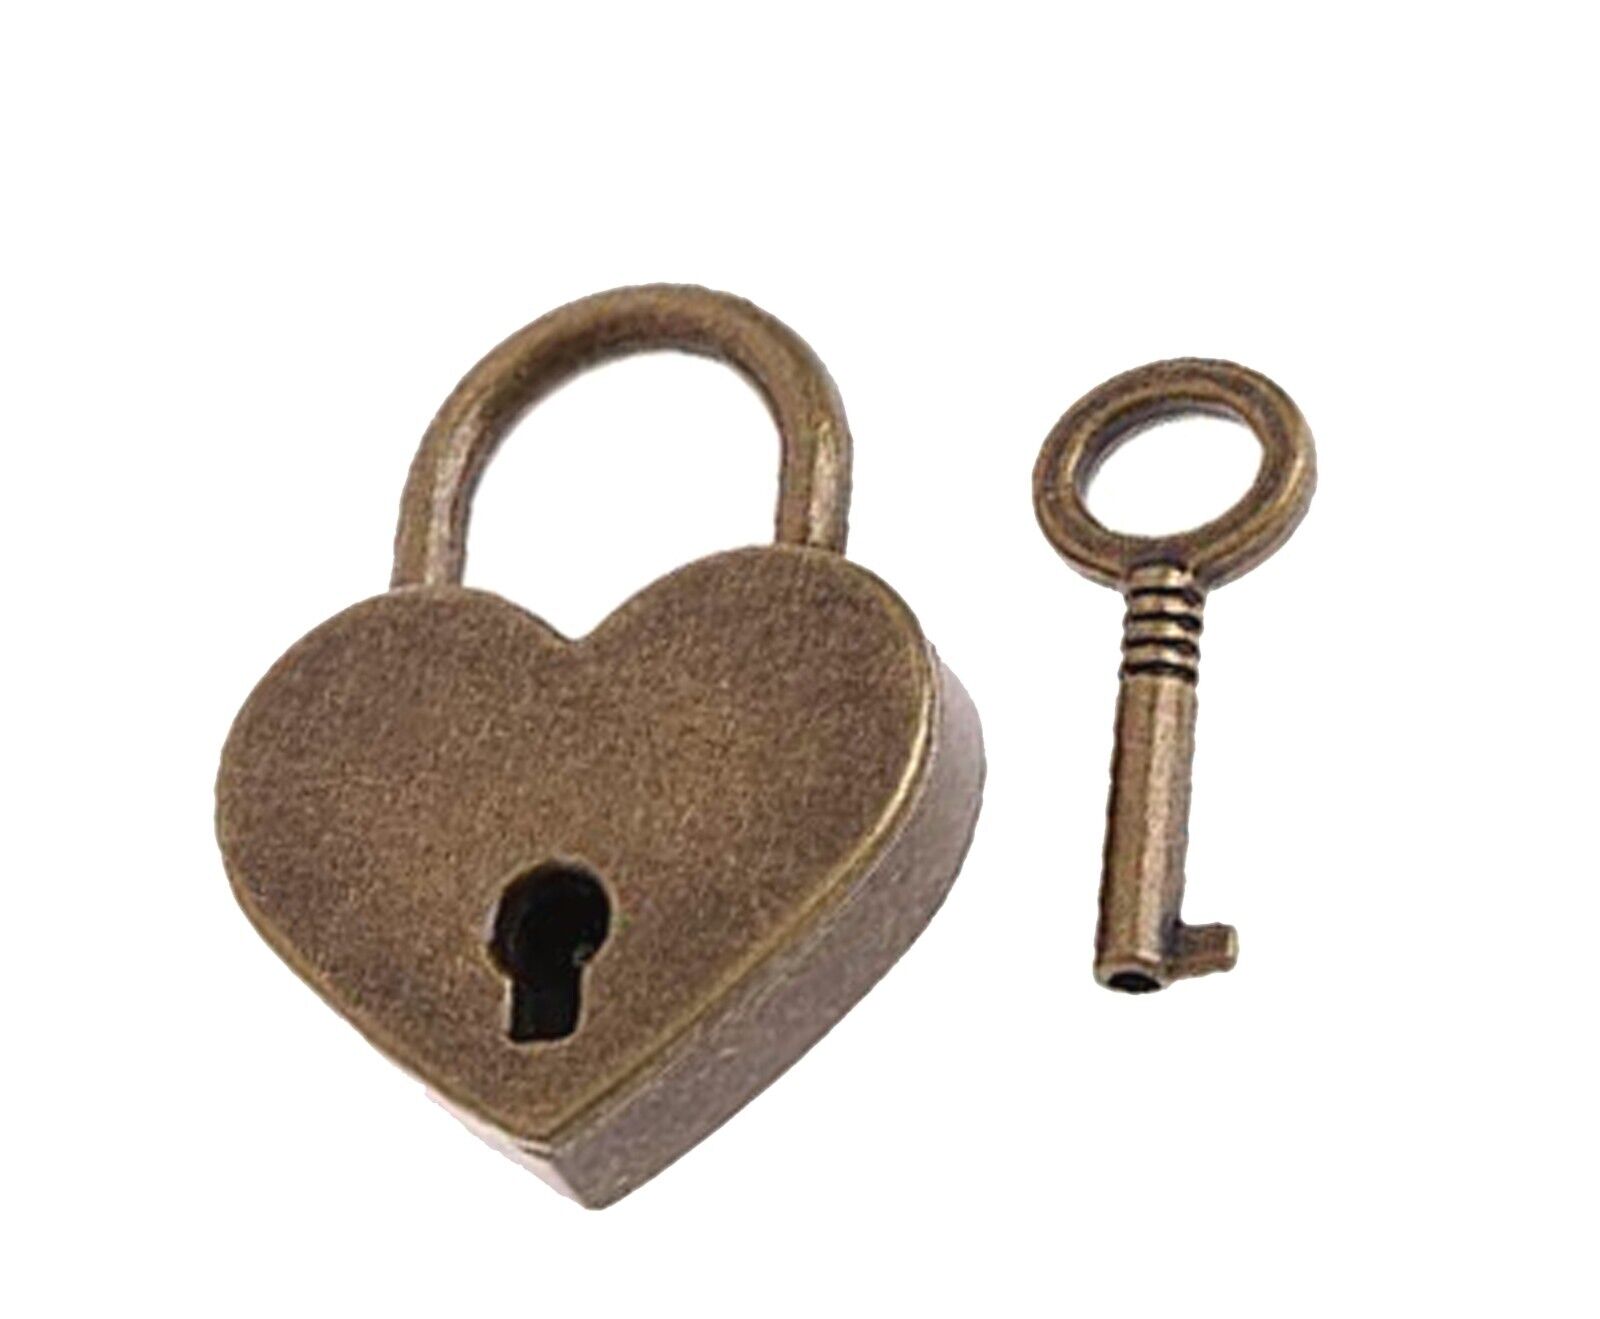 1 Heart Lock and Skeleton Key Set Rustic Bronze Old Vintage Look Wedding Padlock